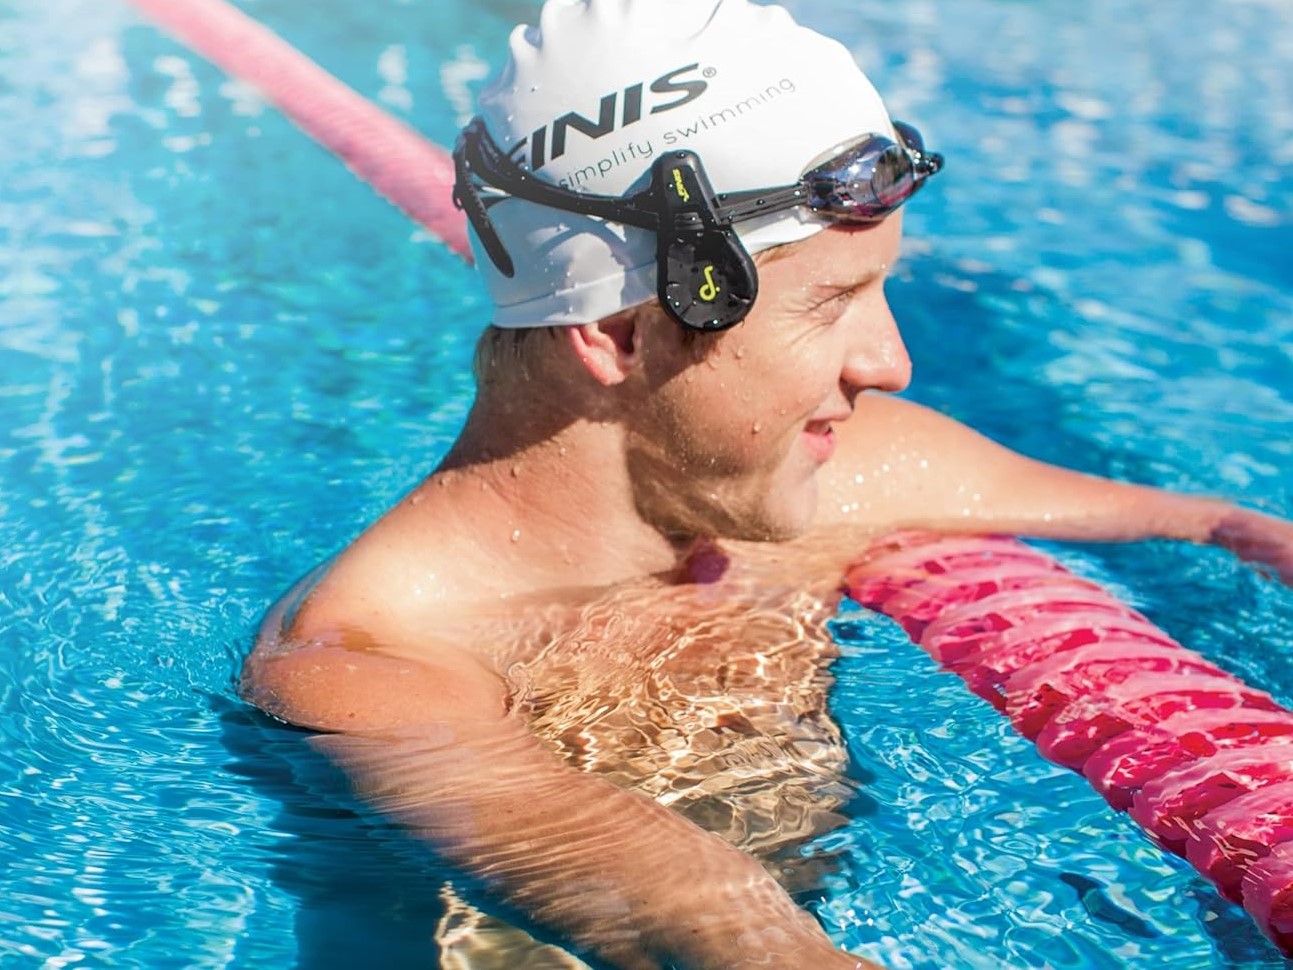 Cinco auriculares con los que podrás practicar natación sin problema